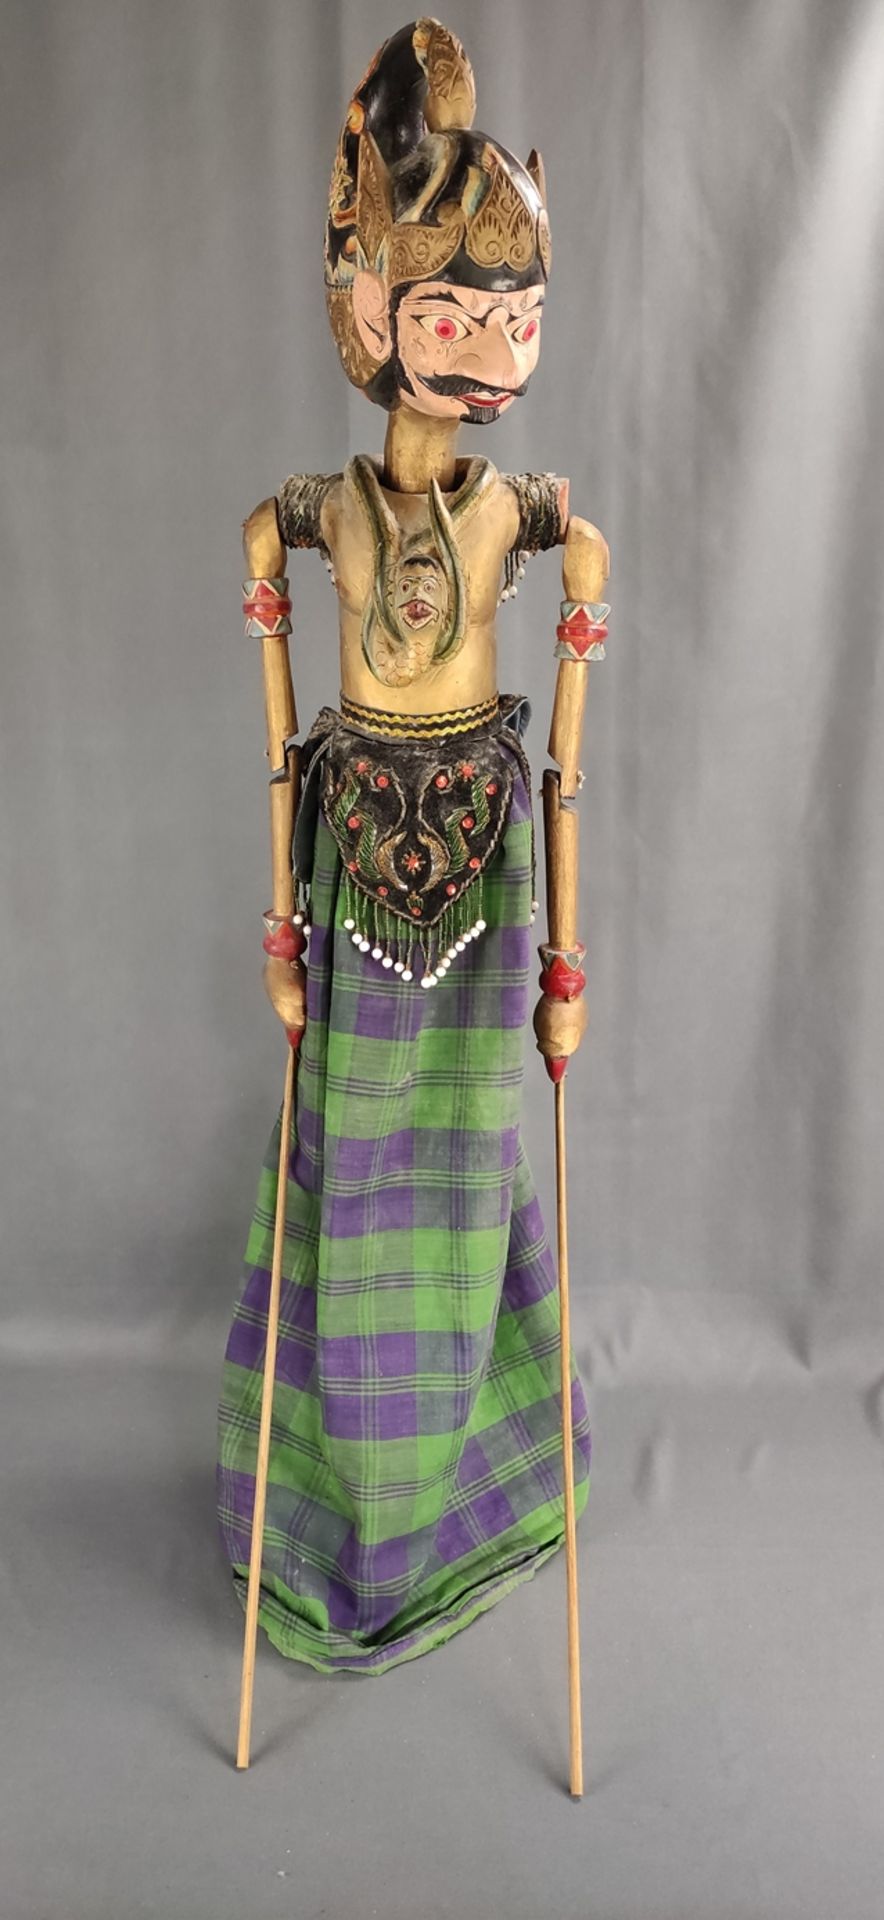 Große Wayang-Golek Puppe, indonesische Stabpuppe, Kopf, Torso und Arme geschnitzt, Kleider aufwendi